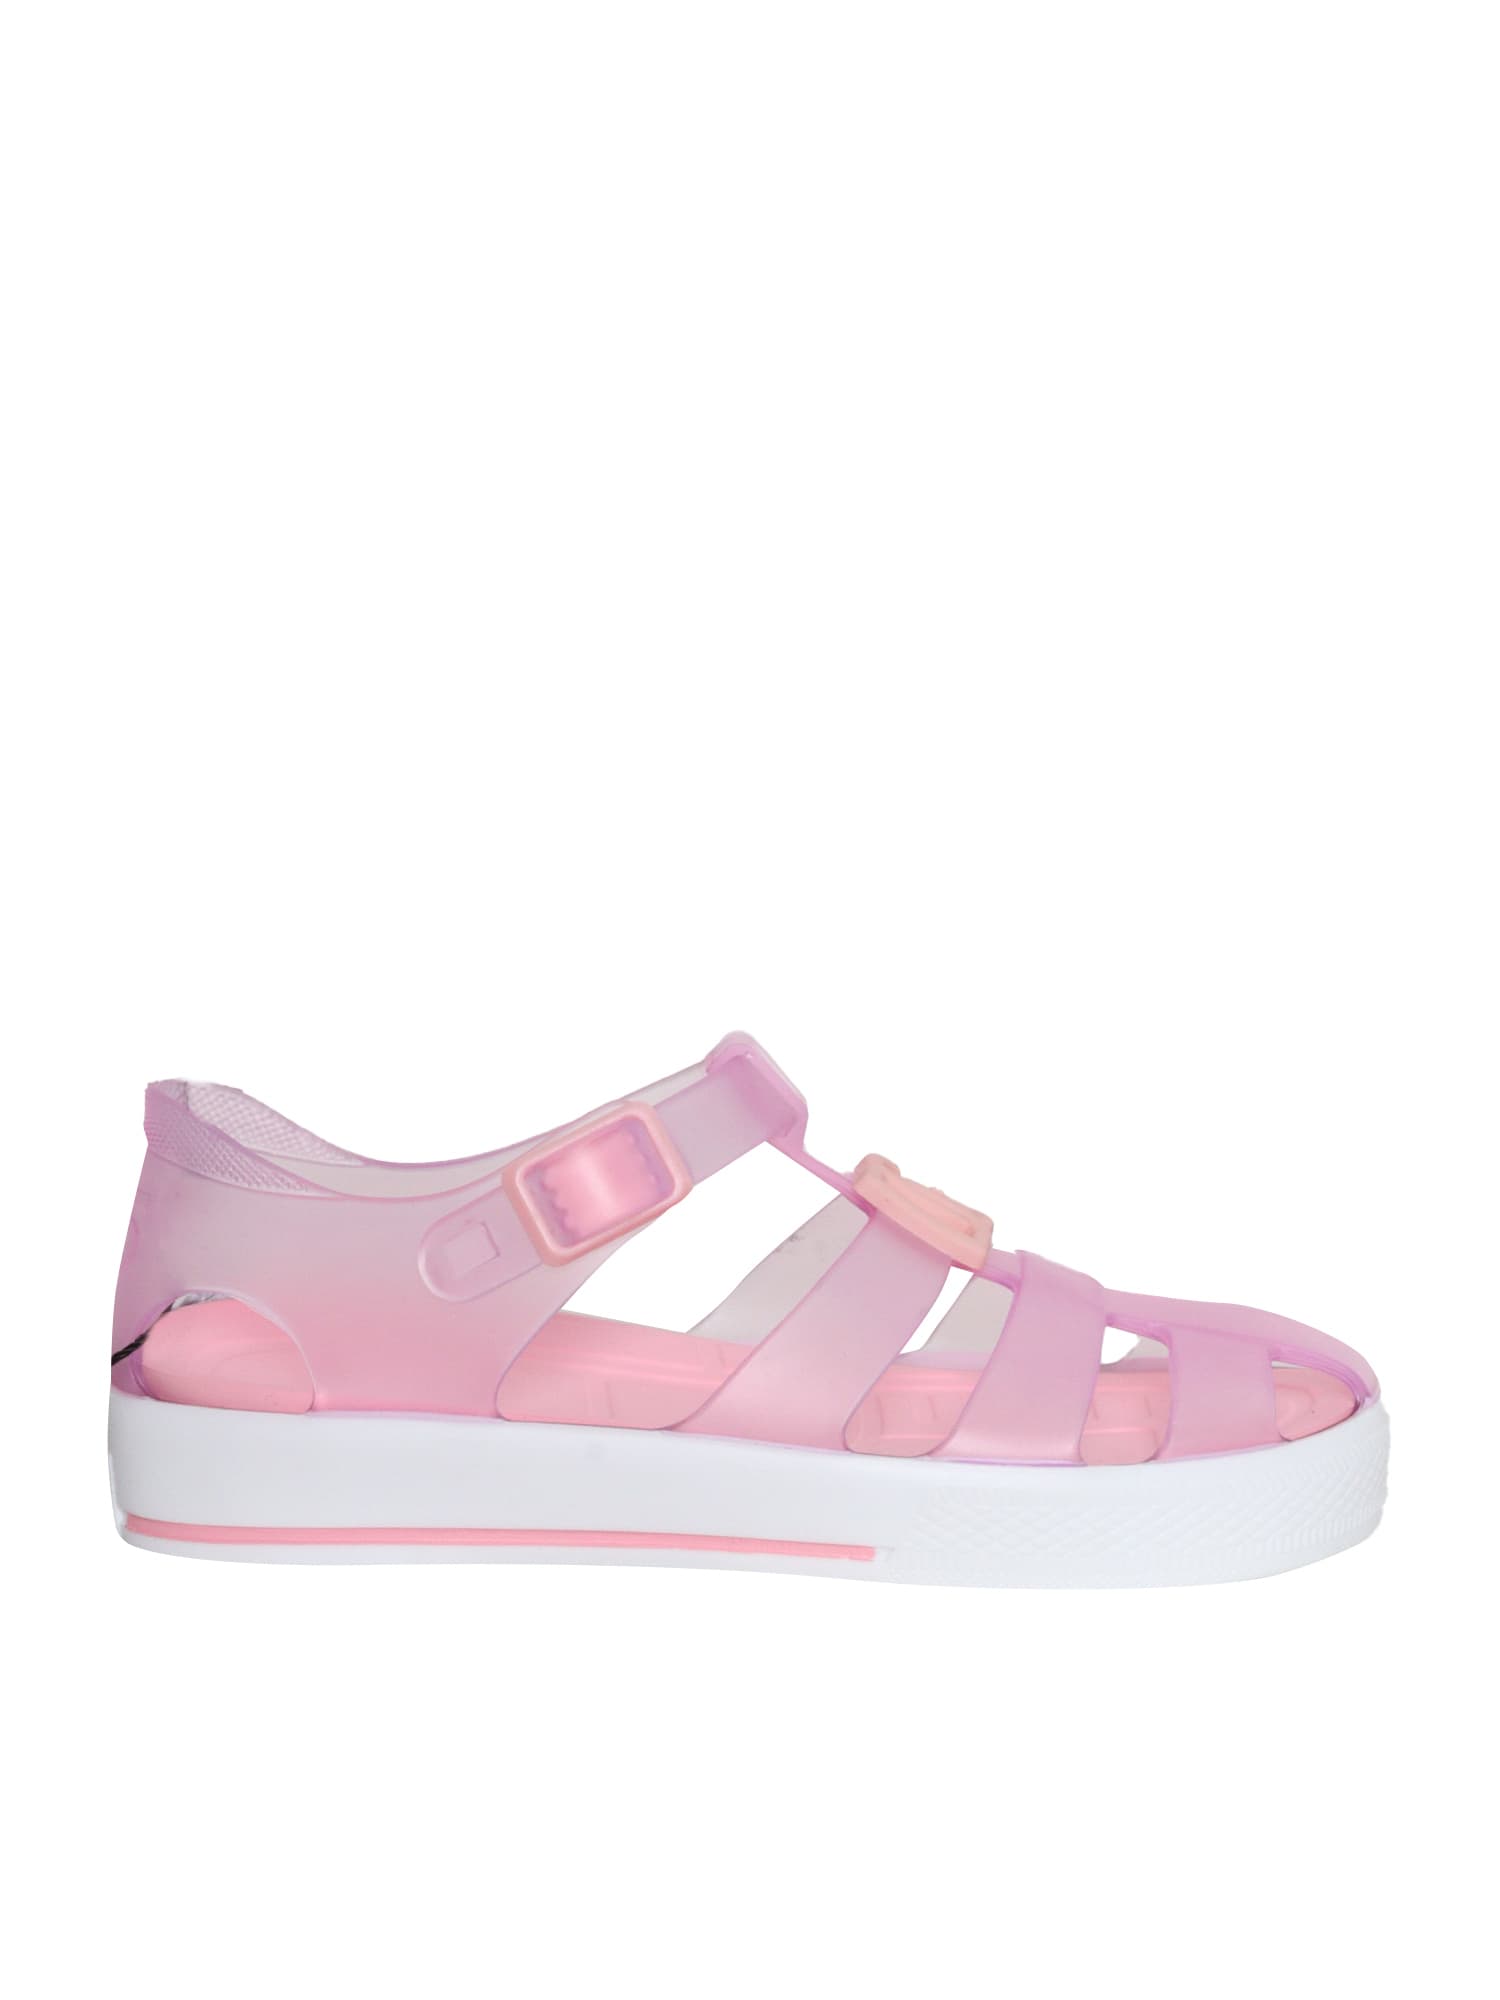 Dolce & Gabbana Kids' Pink Spider Sandals